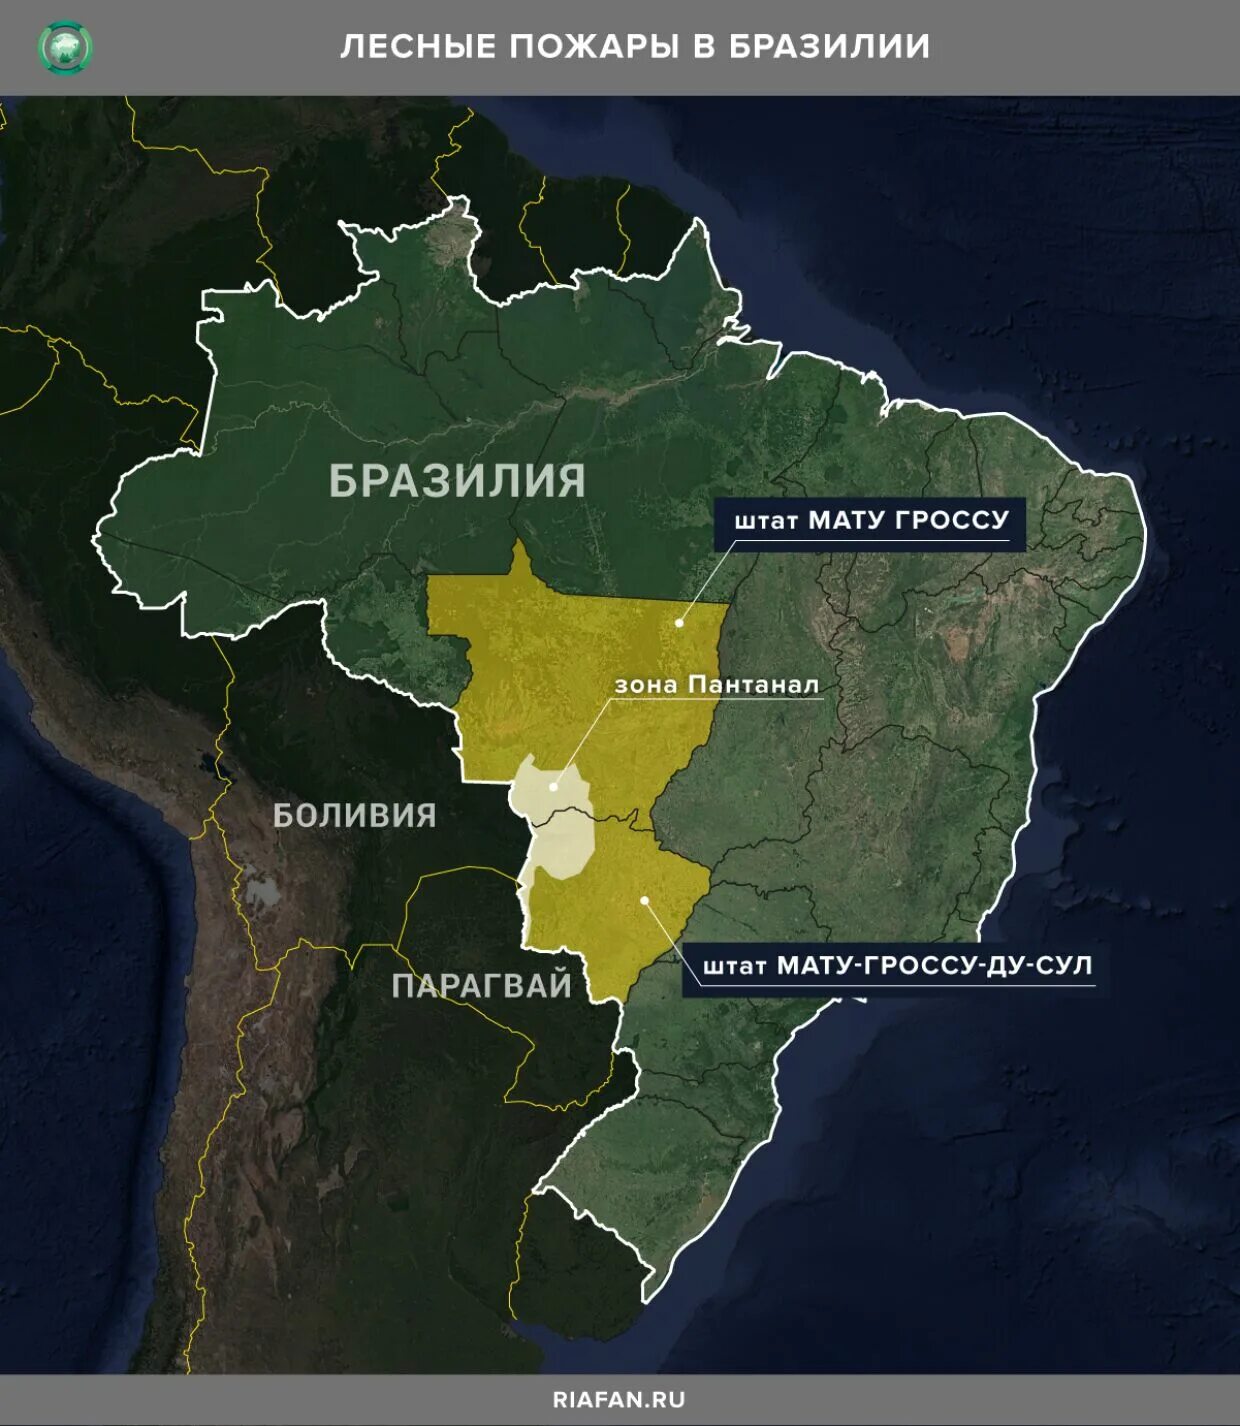 Пантанал Бразилия заповедник. Пантанал Бразилия на карте. Где находится Пантанал на карте Южной Америки. Пантанал низменность на карте.